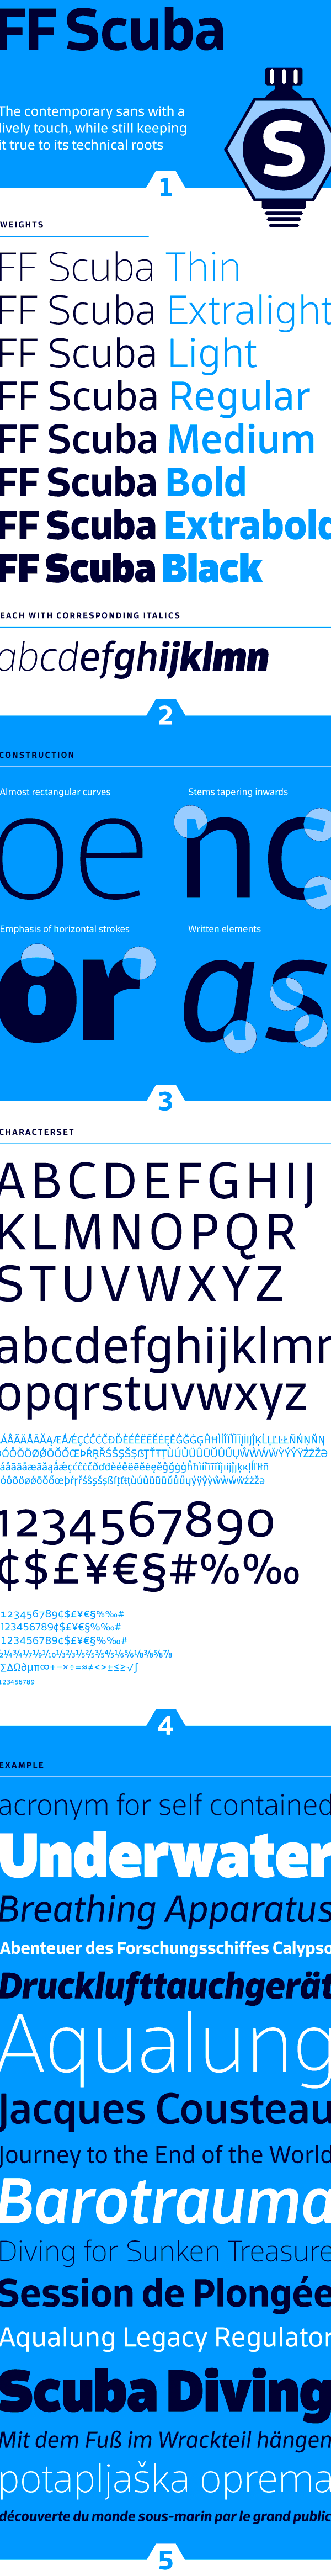 scuba ff FontFont felix braden floodfonts fsi type typedesign font verdana sans sansserif fontshop Typeface